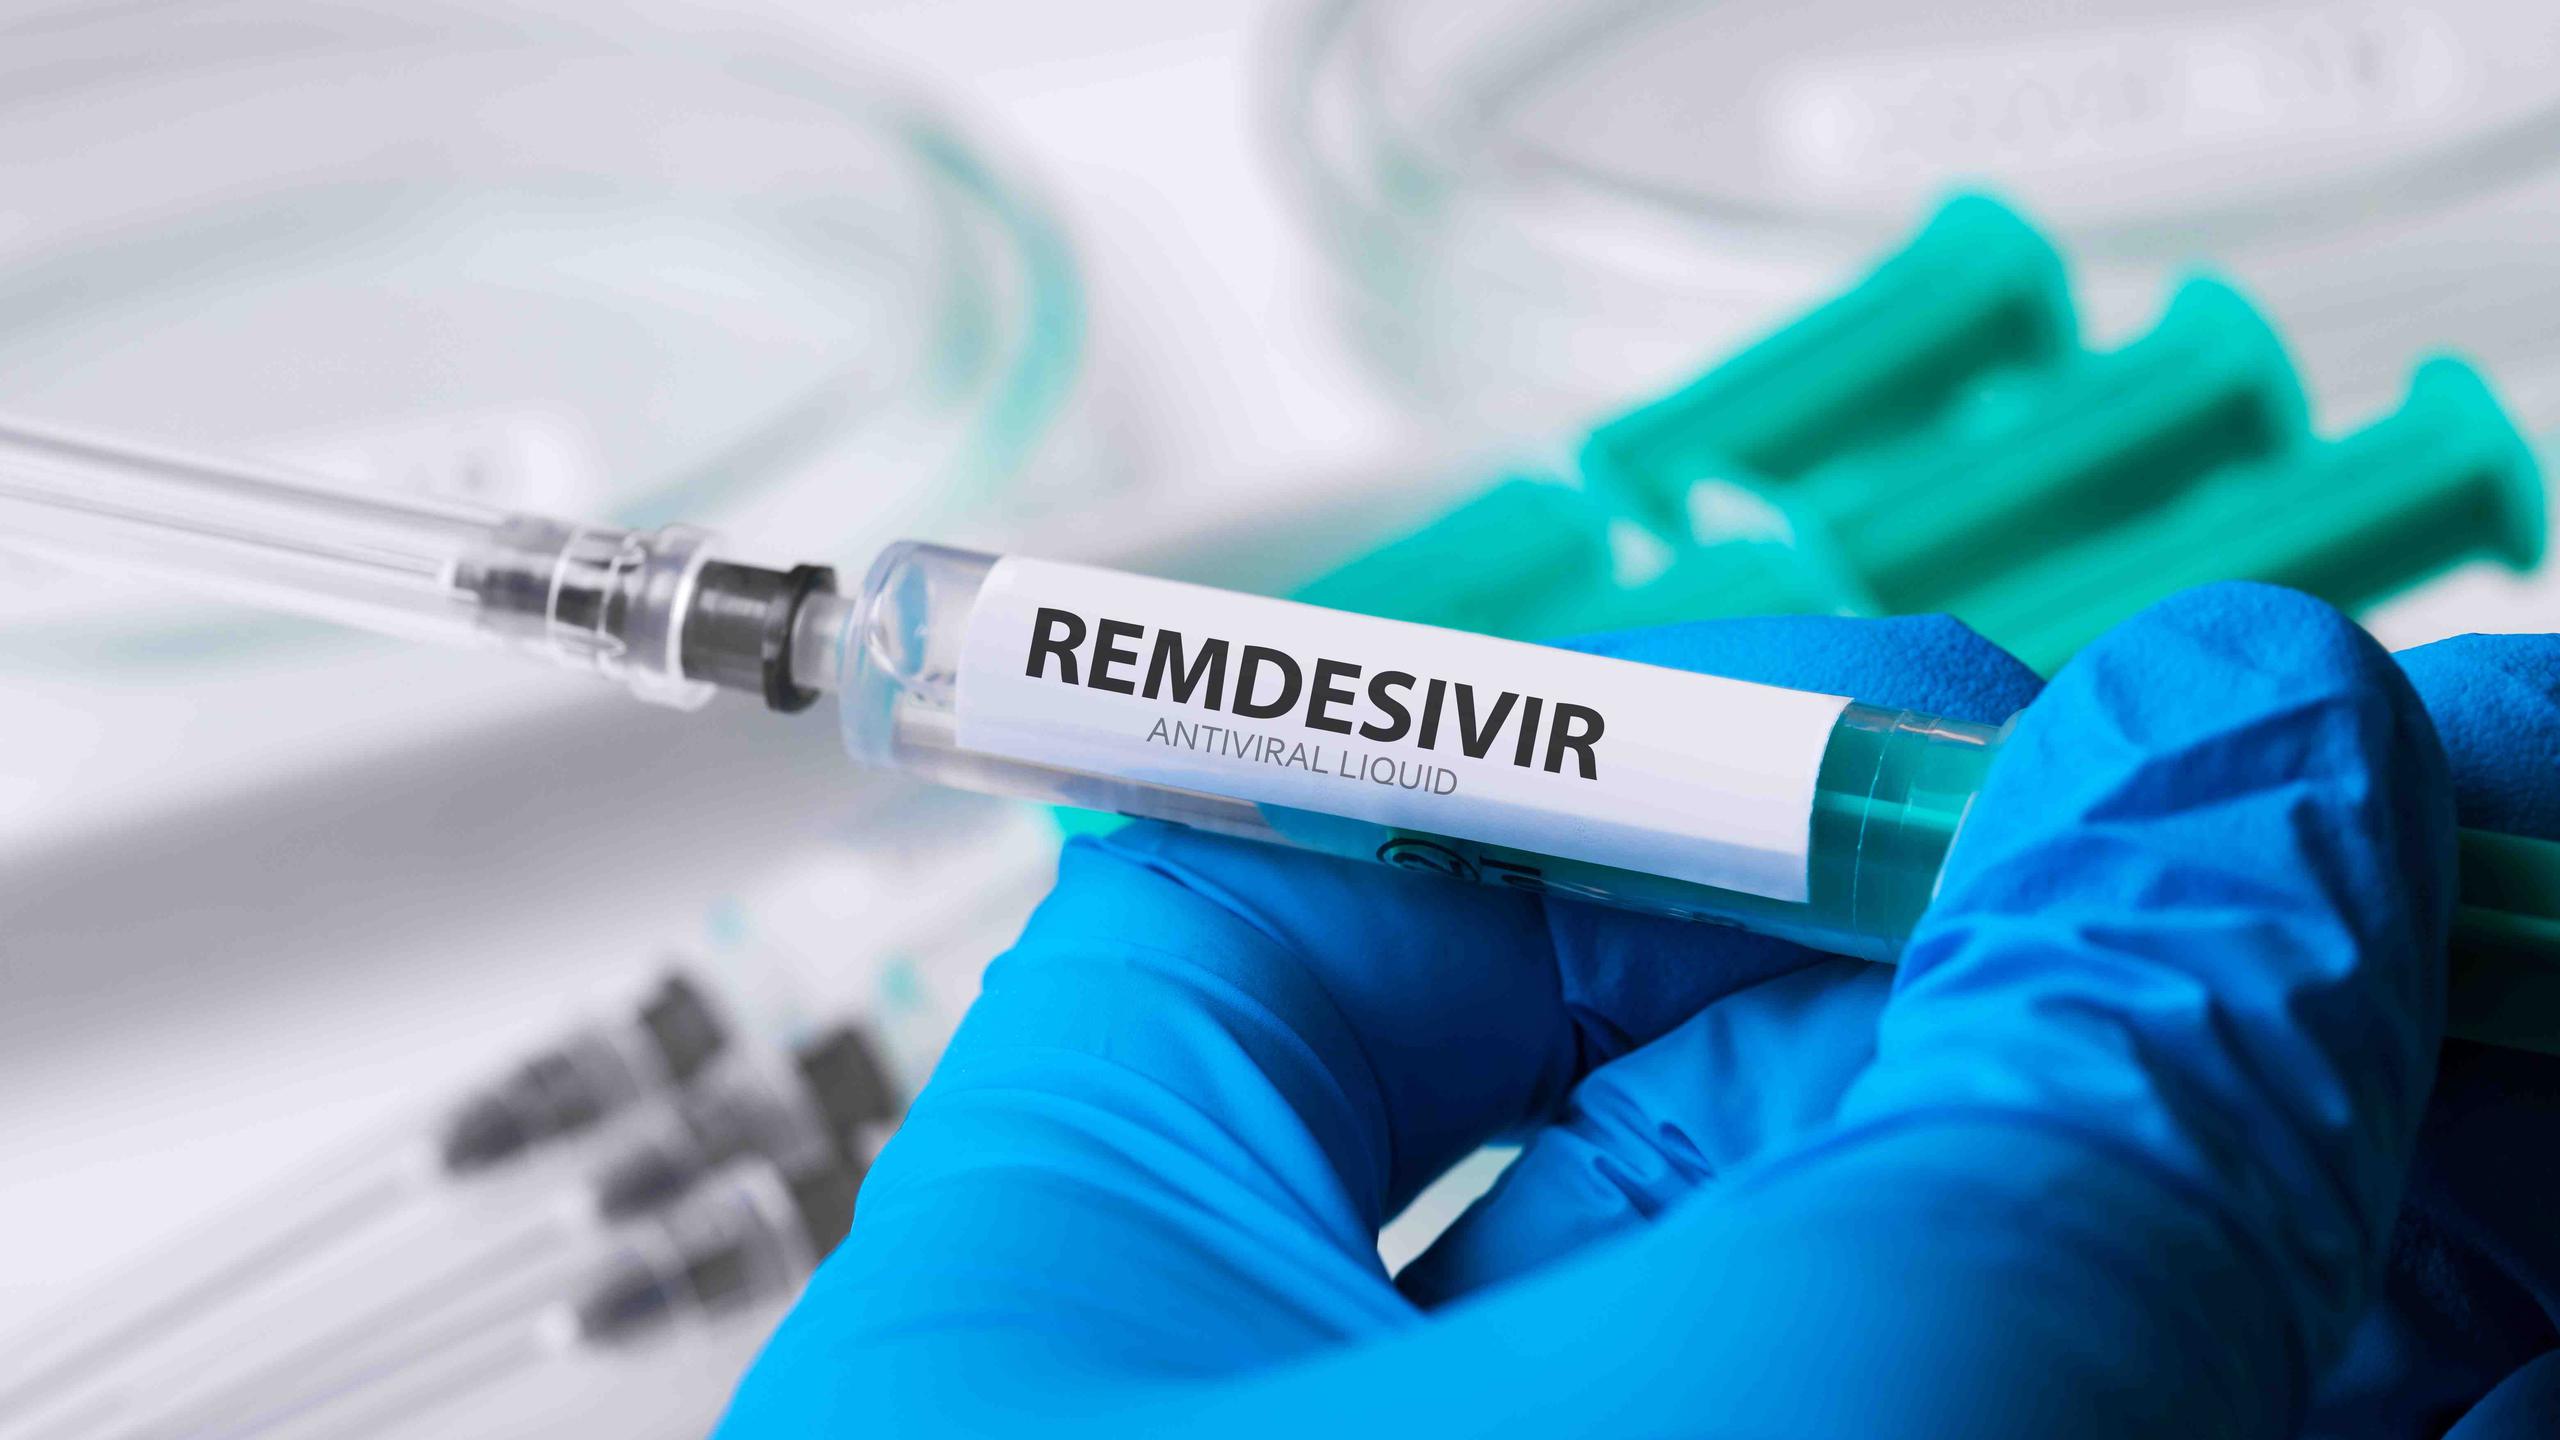 El remdesivir, de la empresa Gilead Sciences, se administra por vía intravenosa y está diseñado para interferir con una enzima que reproduce material genético viral. (Shutterstock)